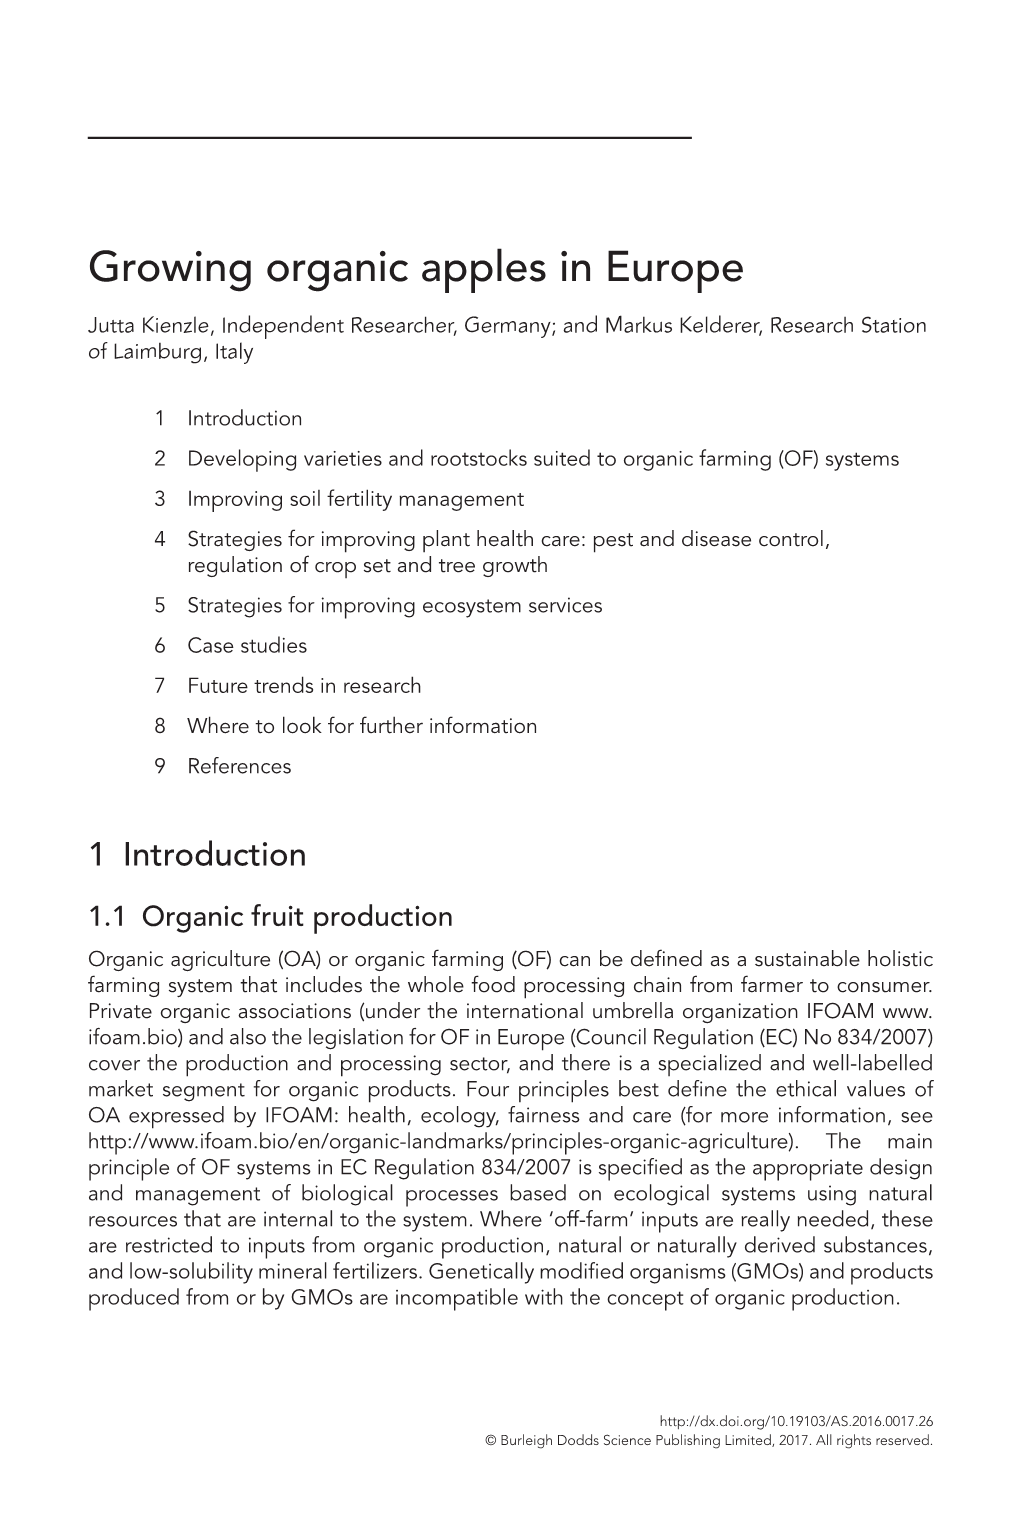 Growing Organic Apples in Europe